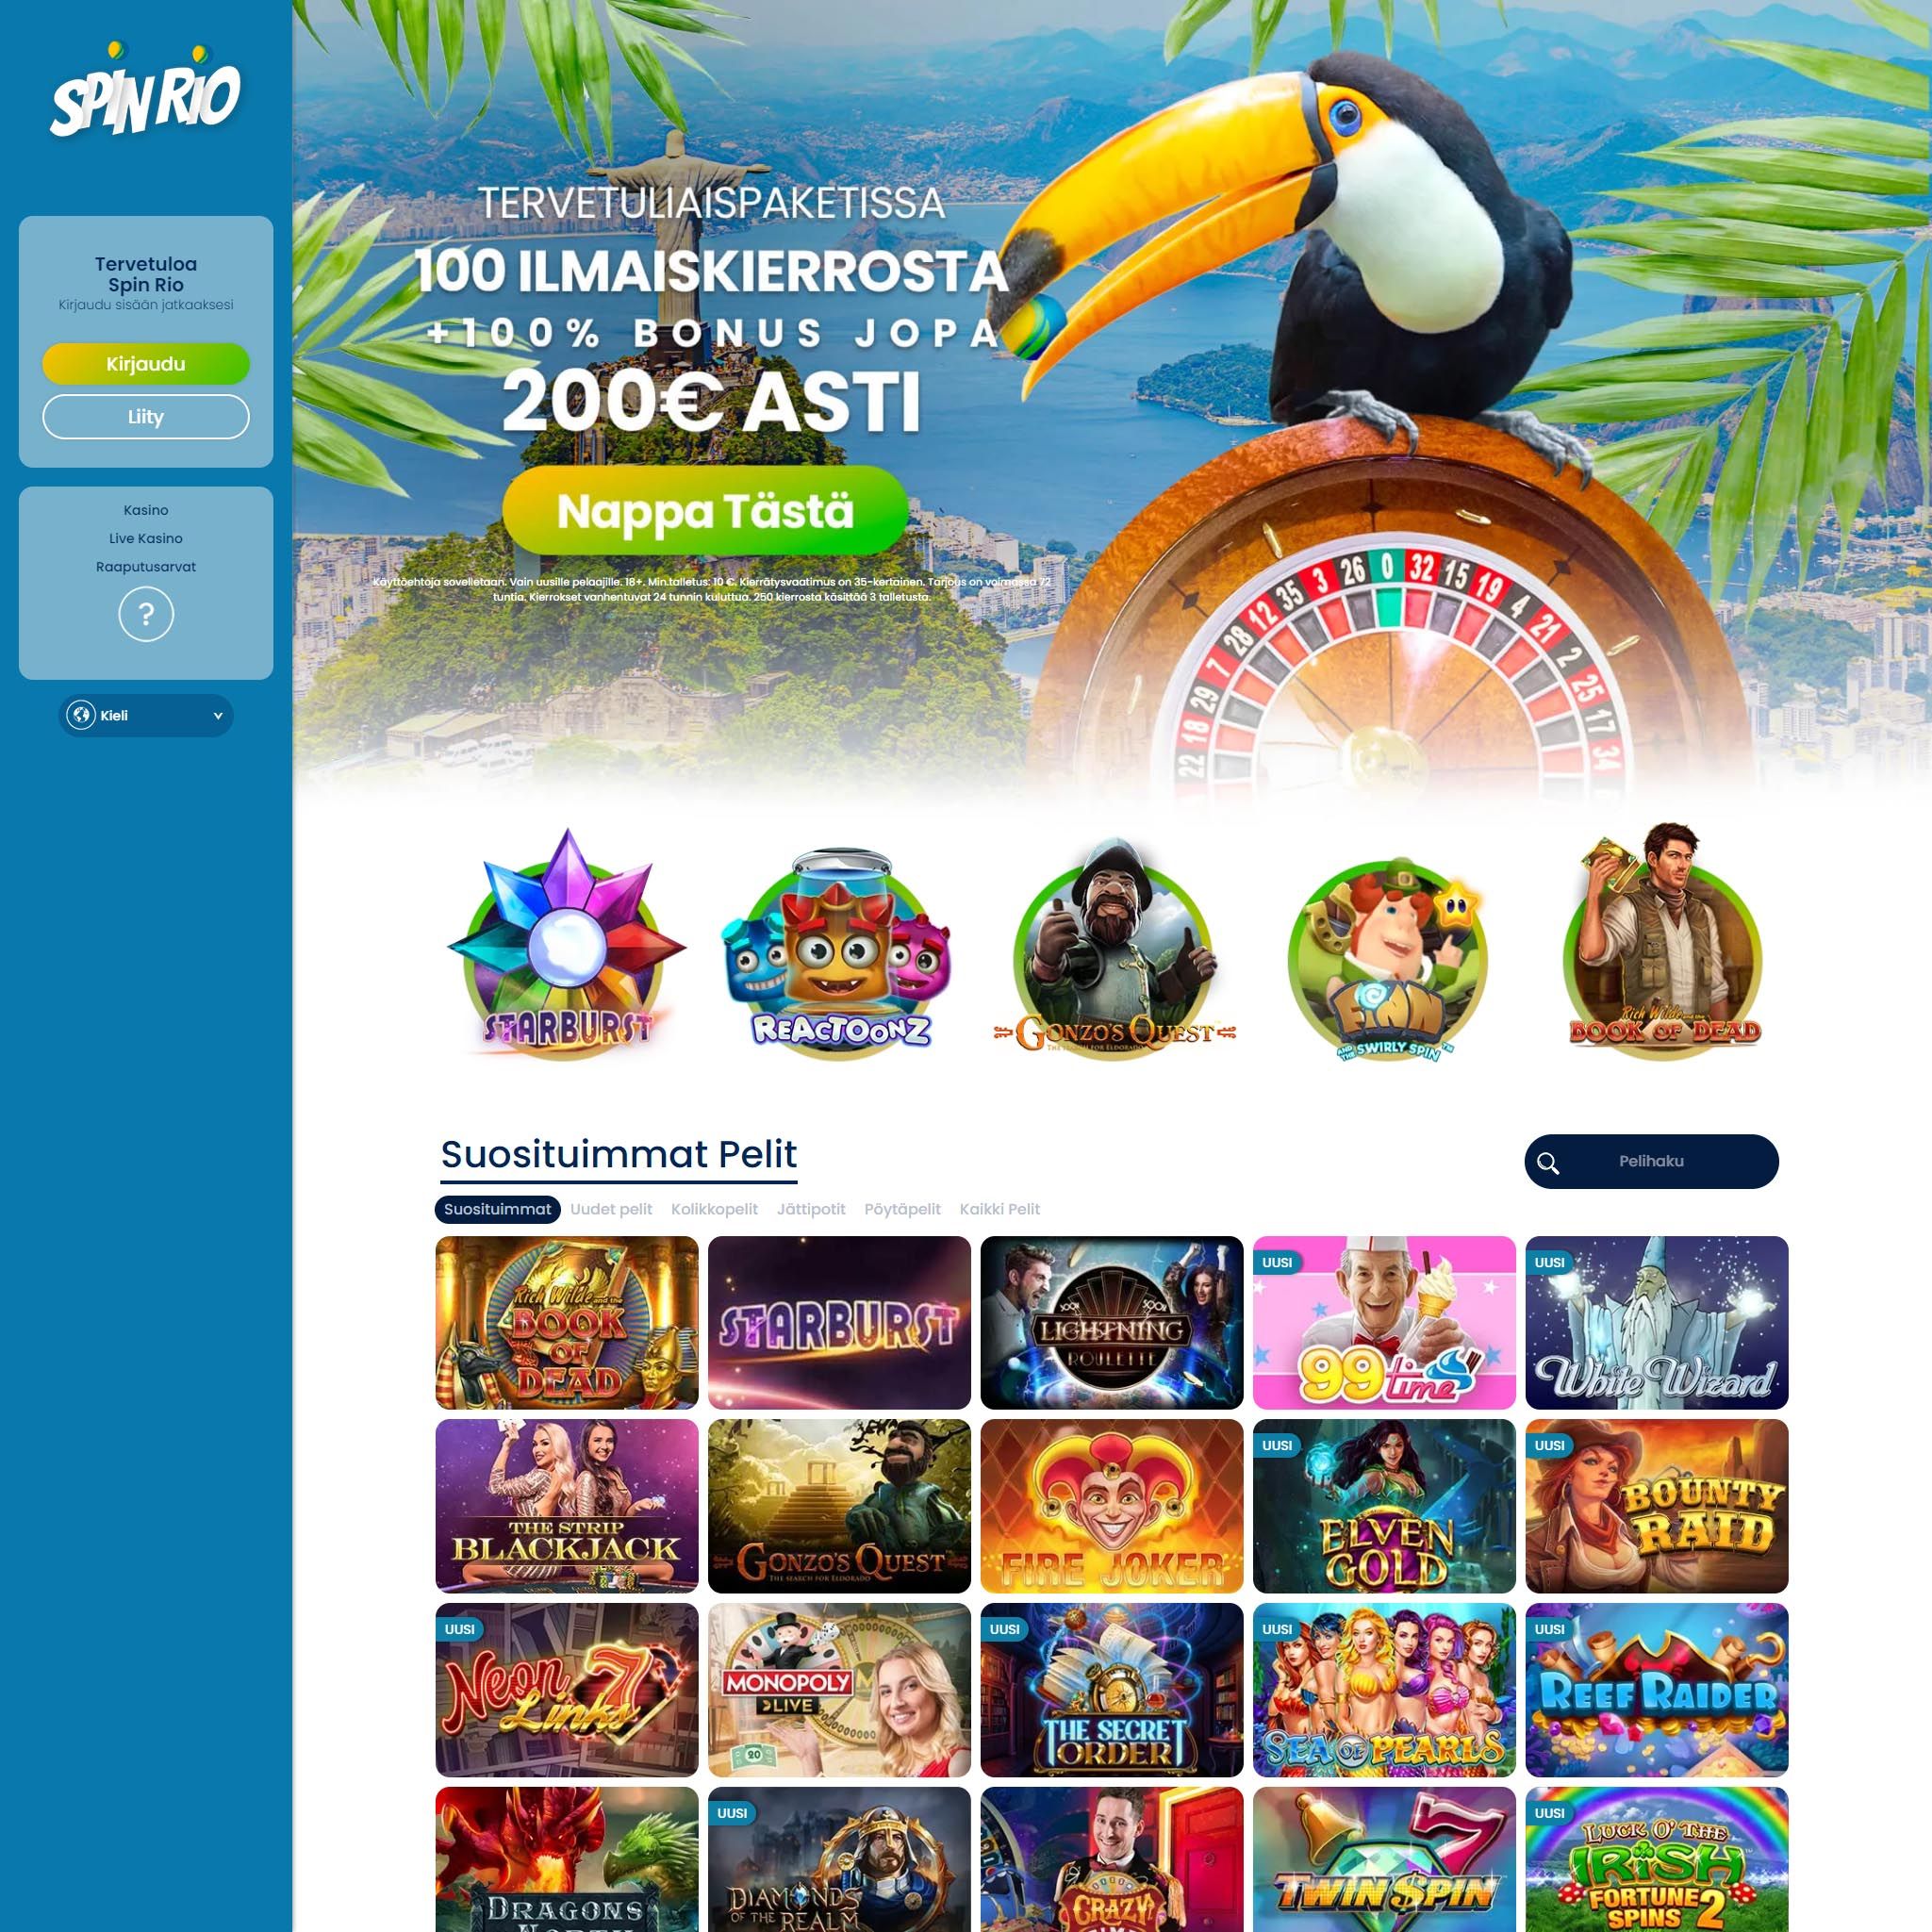 Suomalaiset nettikasinot tarjoavat monia hyötyjä pelaajille. Spin Rio Casino on suosittelemamme nettikasino, jolle voit lunastaa bonuksia ja muita etuja.